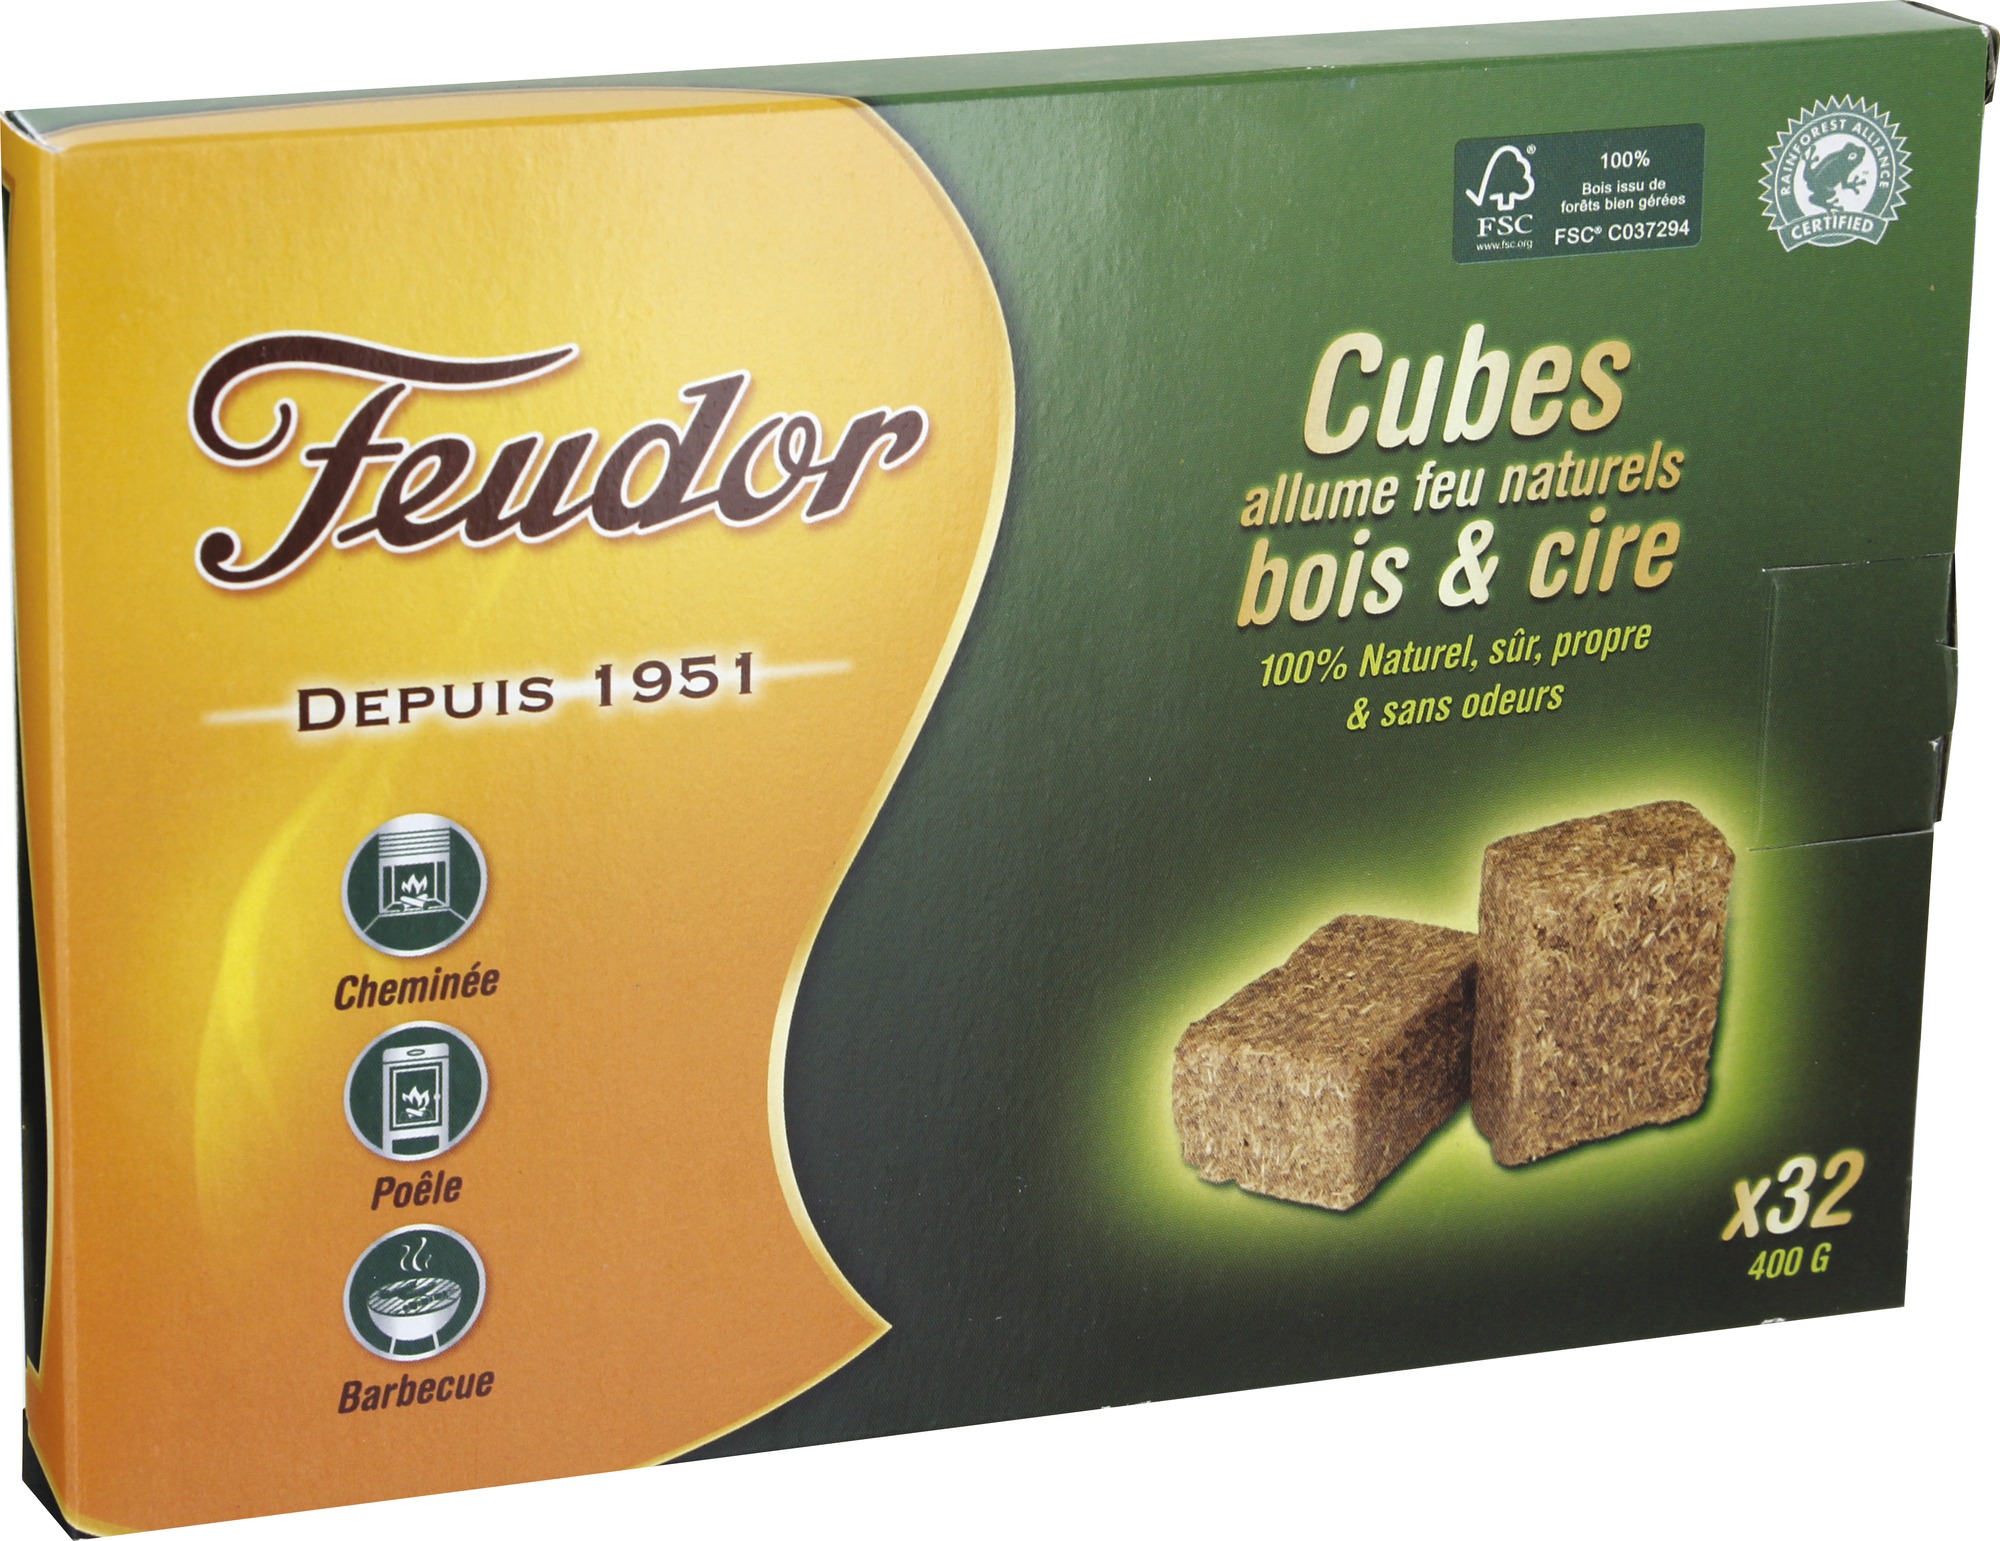 Cubes bois et cire Feudor - 32 allume-feu